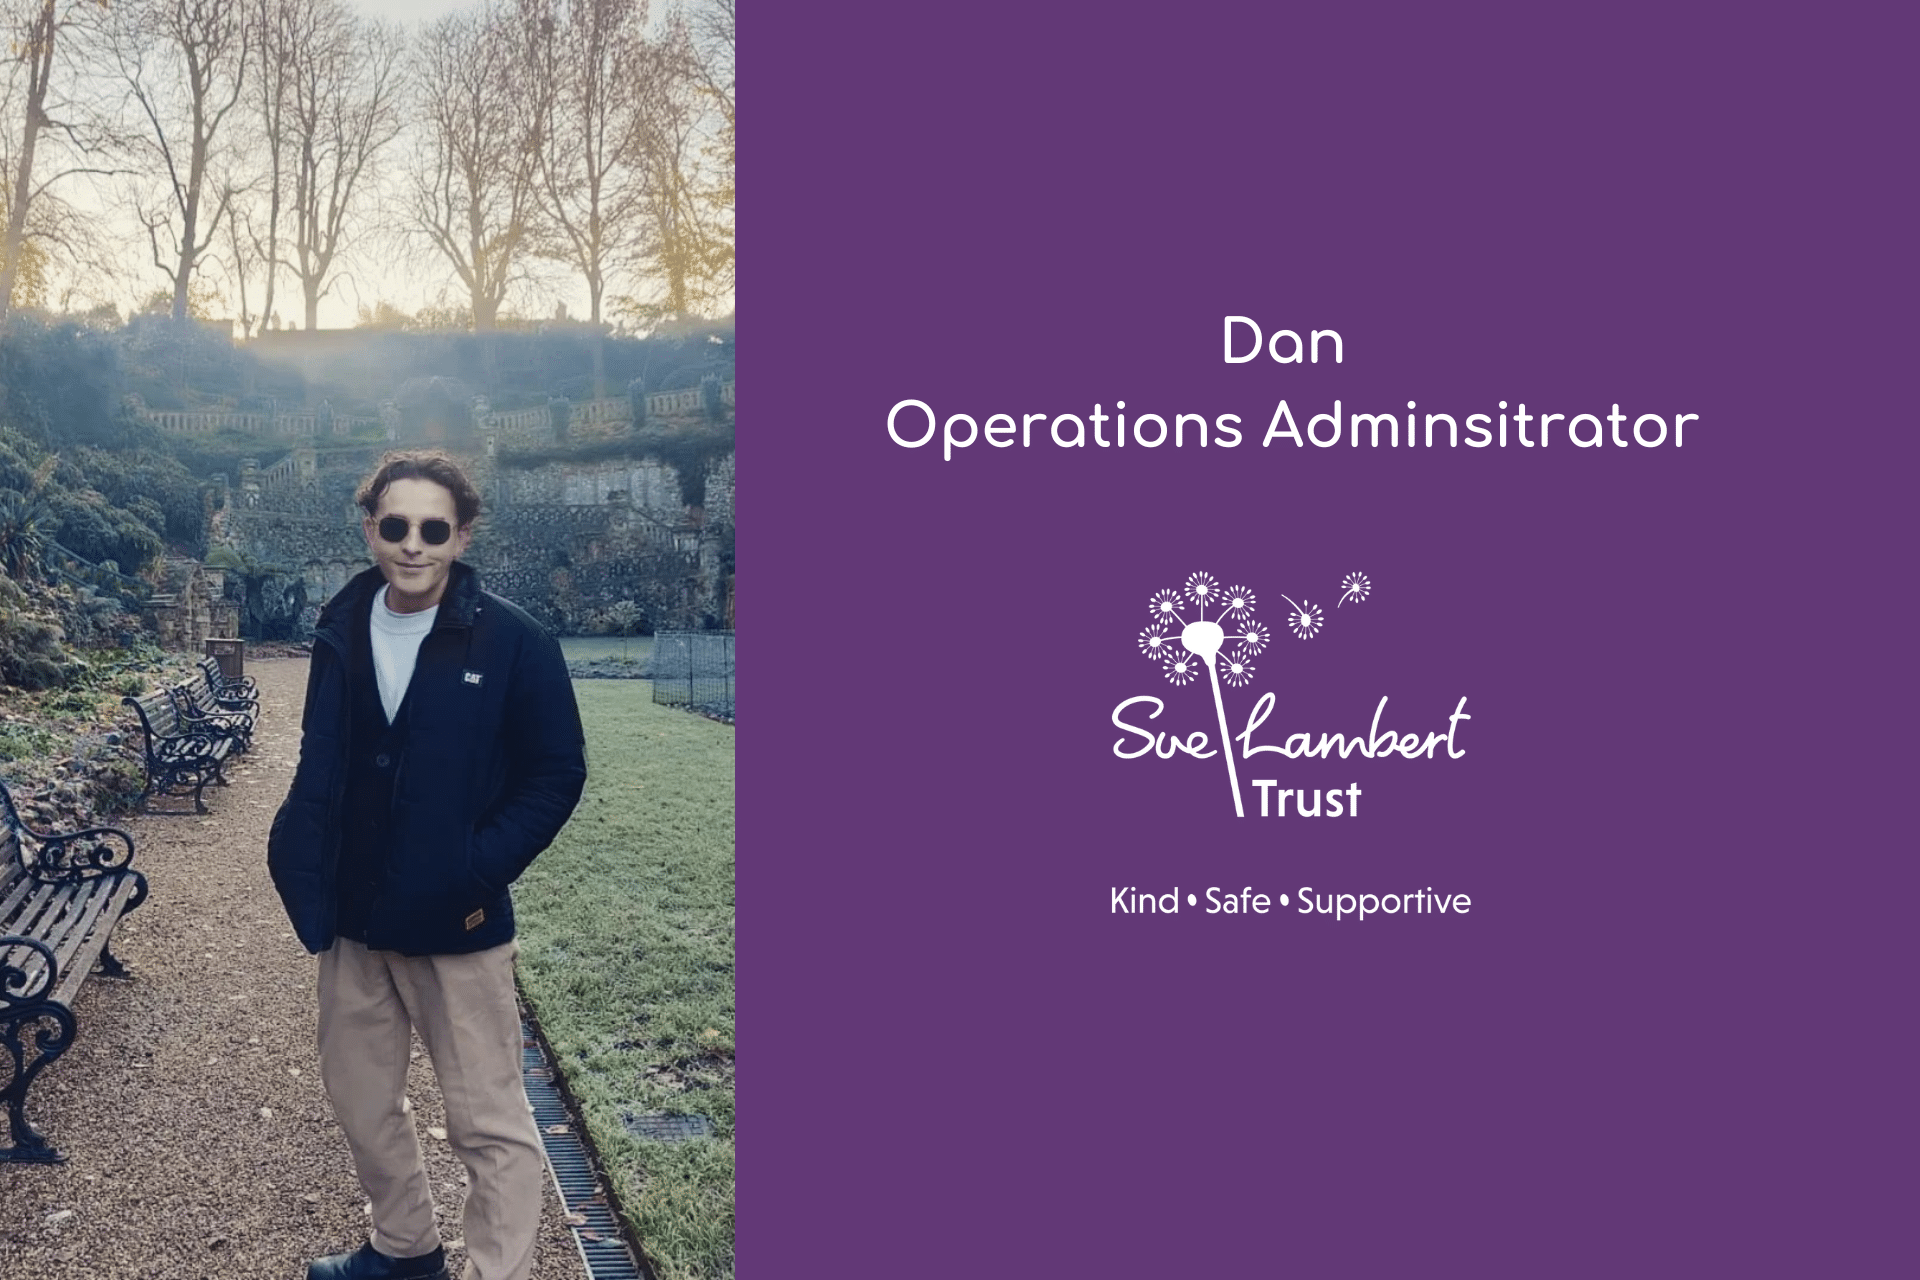 image of Dan operations administrator